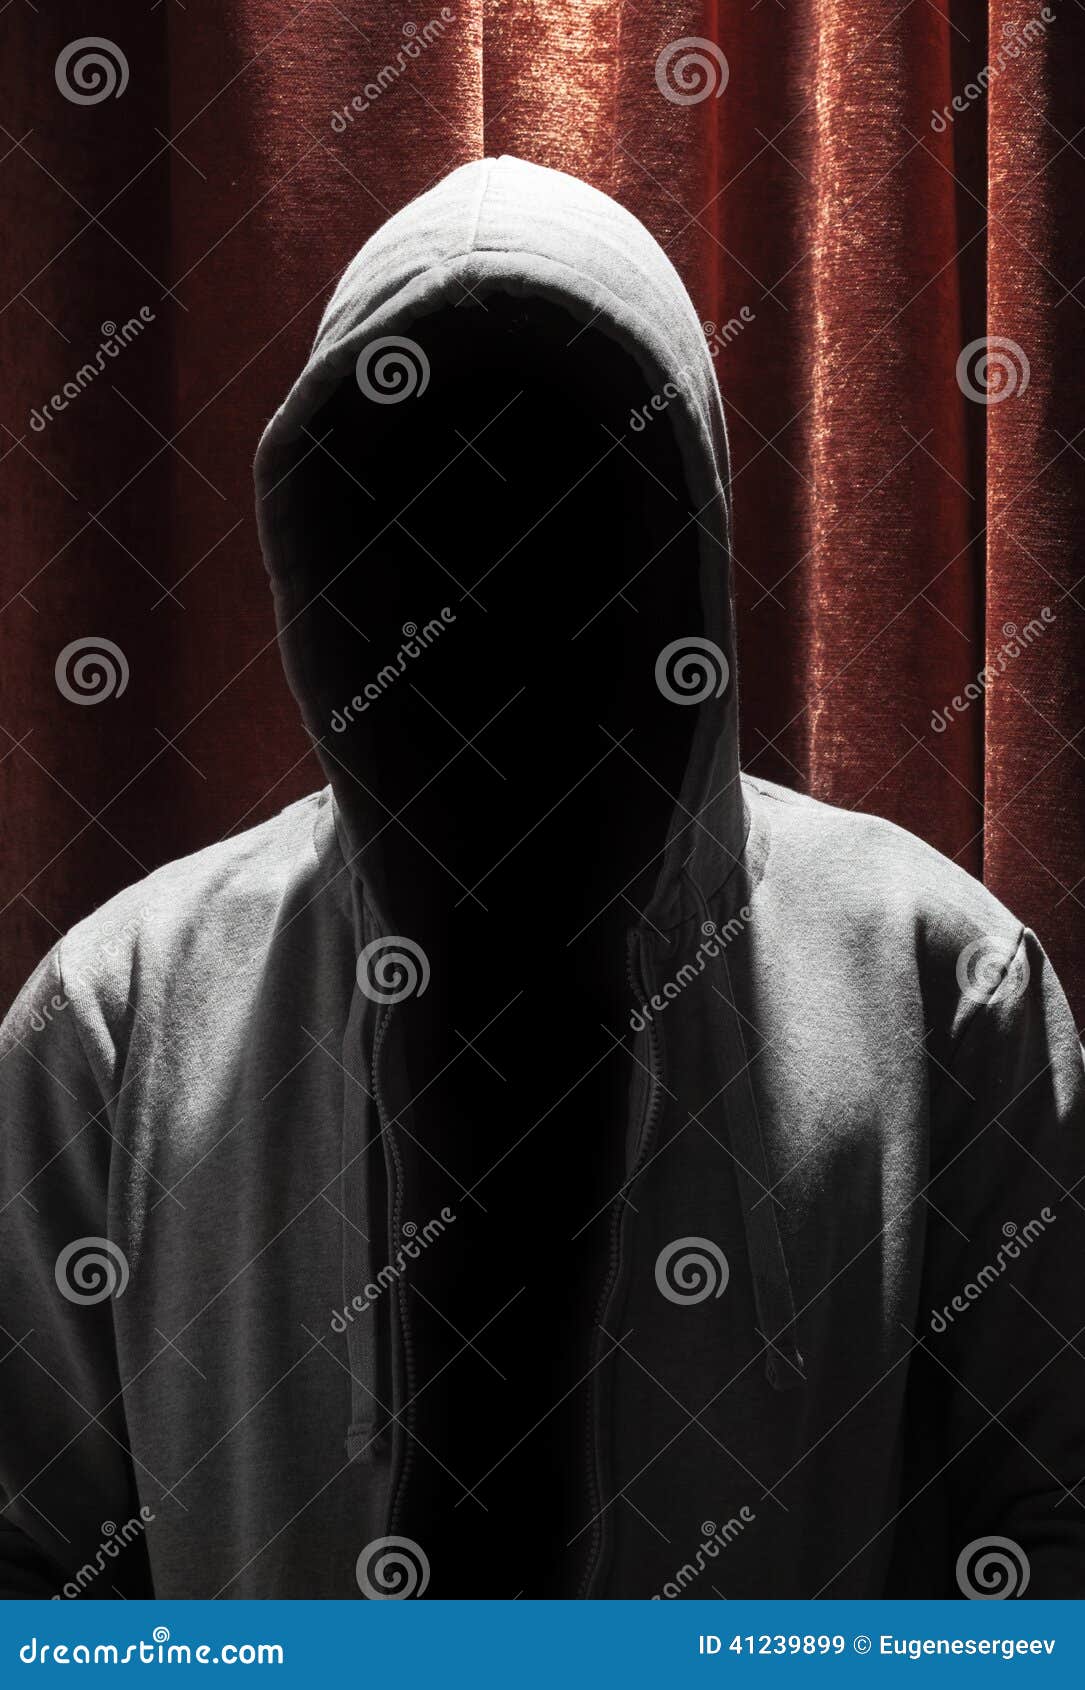 Скрытный это какой. Капюшон скрывающий лицо. Лицо скрытое капюшоном. Скрытный человек. Человек невидимка в капюшоне.